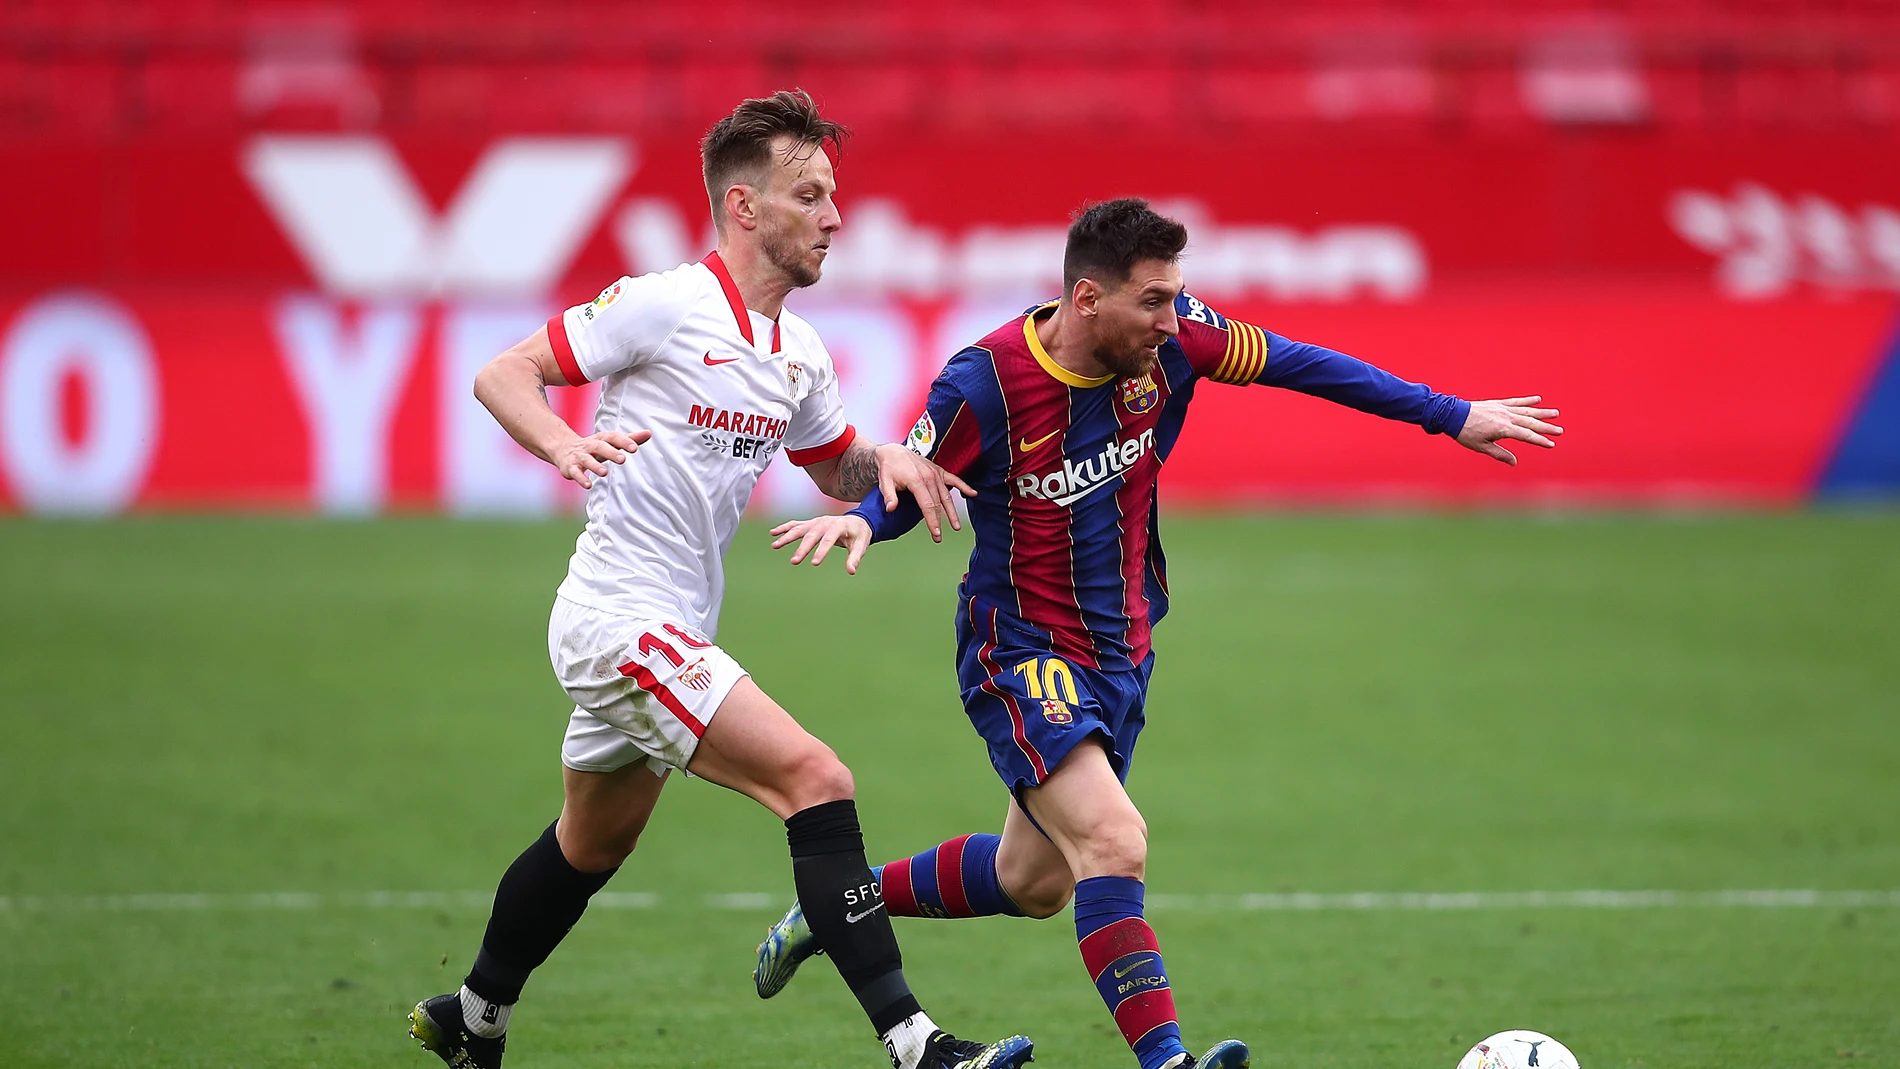 Ivan Rakitic y Leo Messi